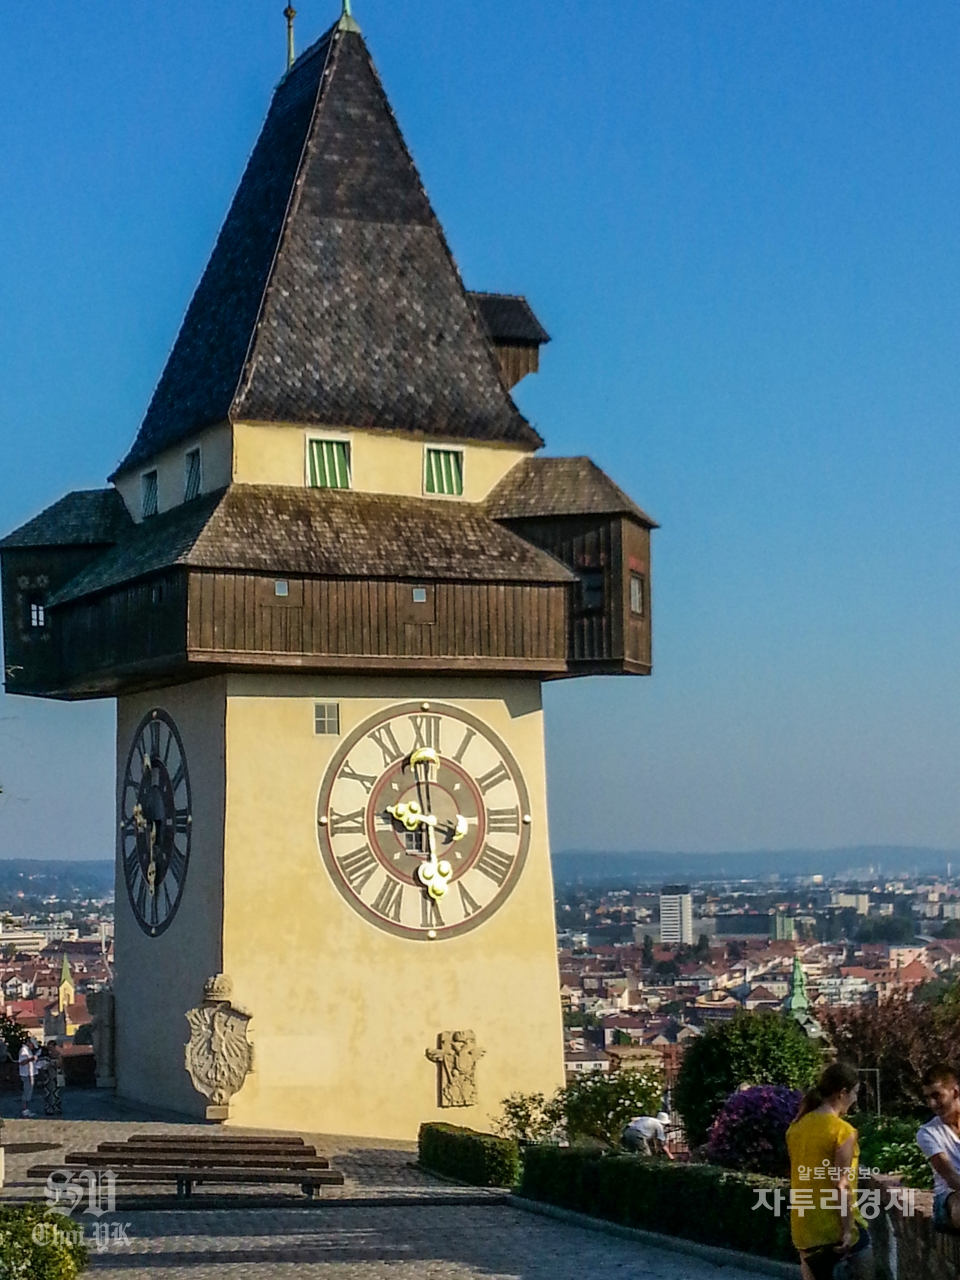 그라츠 시계탑 (Grazer Uhrturm)그라츠에서 가장 유명한 랜드 마크 중 하나 인 그라츠 시계탑 (Grazer Uhrturm)은 짧은 손을 가진 혼란스러운 시계 문자판으로 가장 잘 알려져 있다. Photo by 최영규